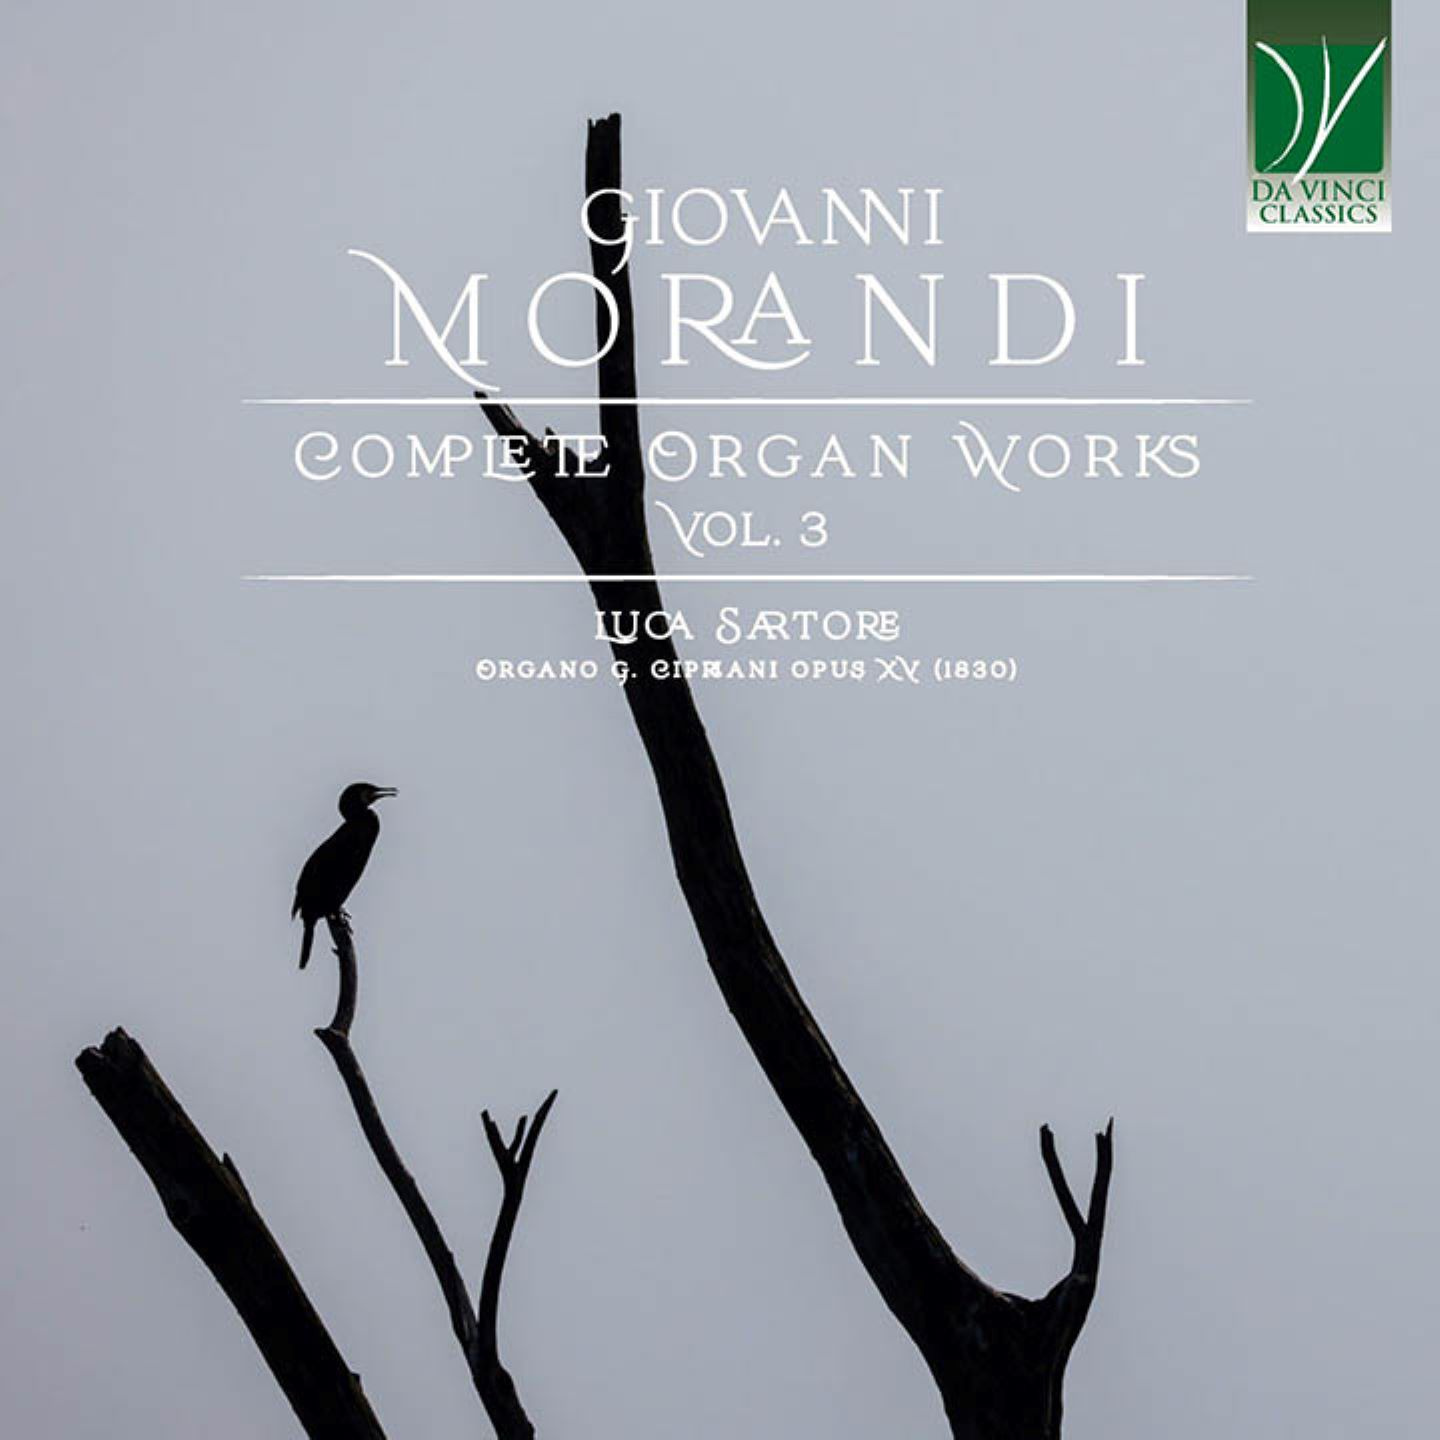 GIOVANNI MORANDI: COMPLETE ORGAN WORKS VOL. 3